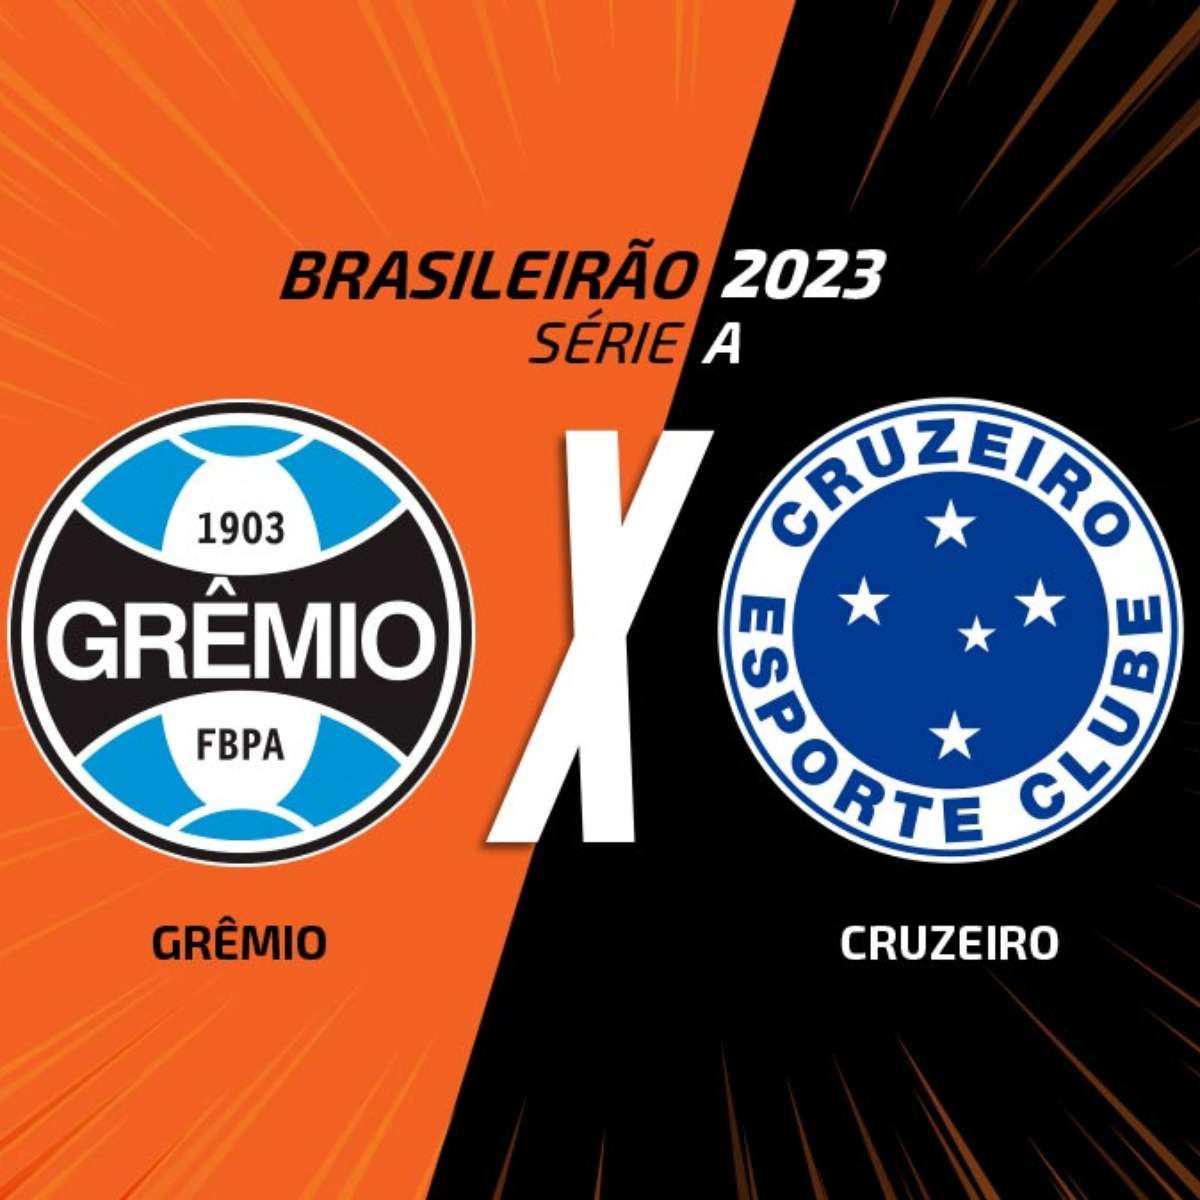 Gremio vs Brusque: A Clash of Football Titans